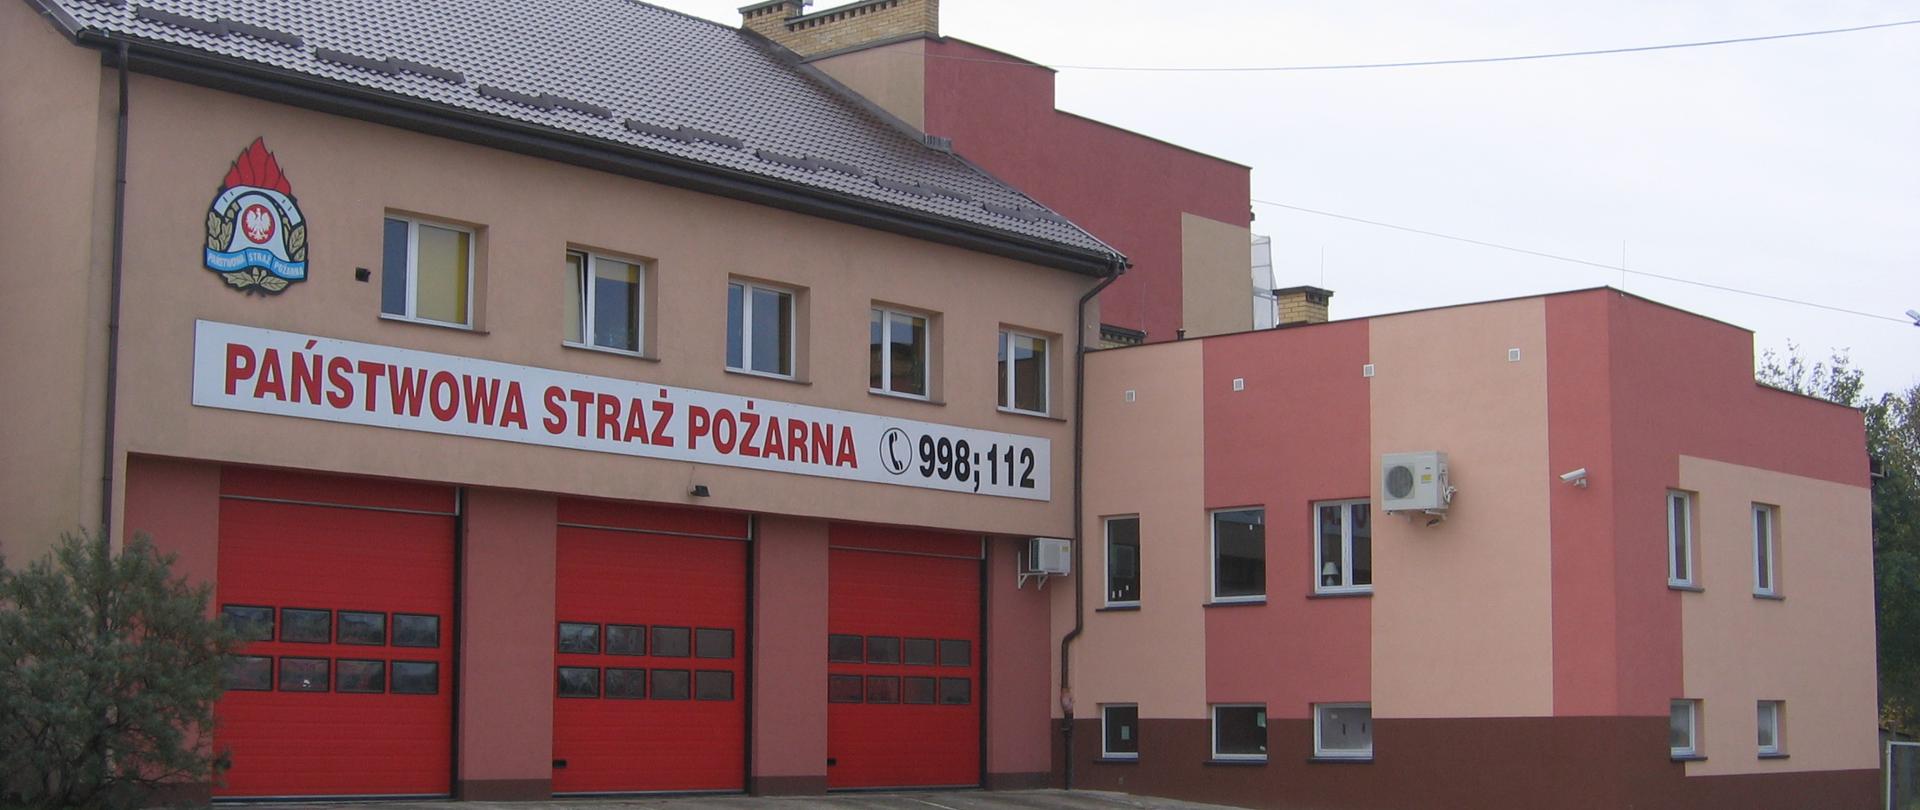 Budynek Komendy Powiatowej PSP w Hajnówce z trzema czerwonymi bramami garażowymi. Elewacja w odcieniach koloru różowego. Nad bramami napis Państwowa Straż Pożarna 998, 112.